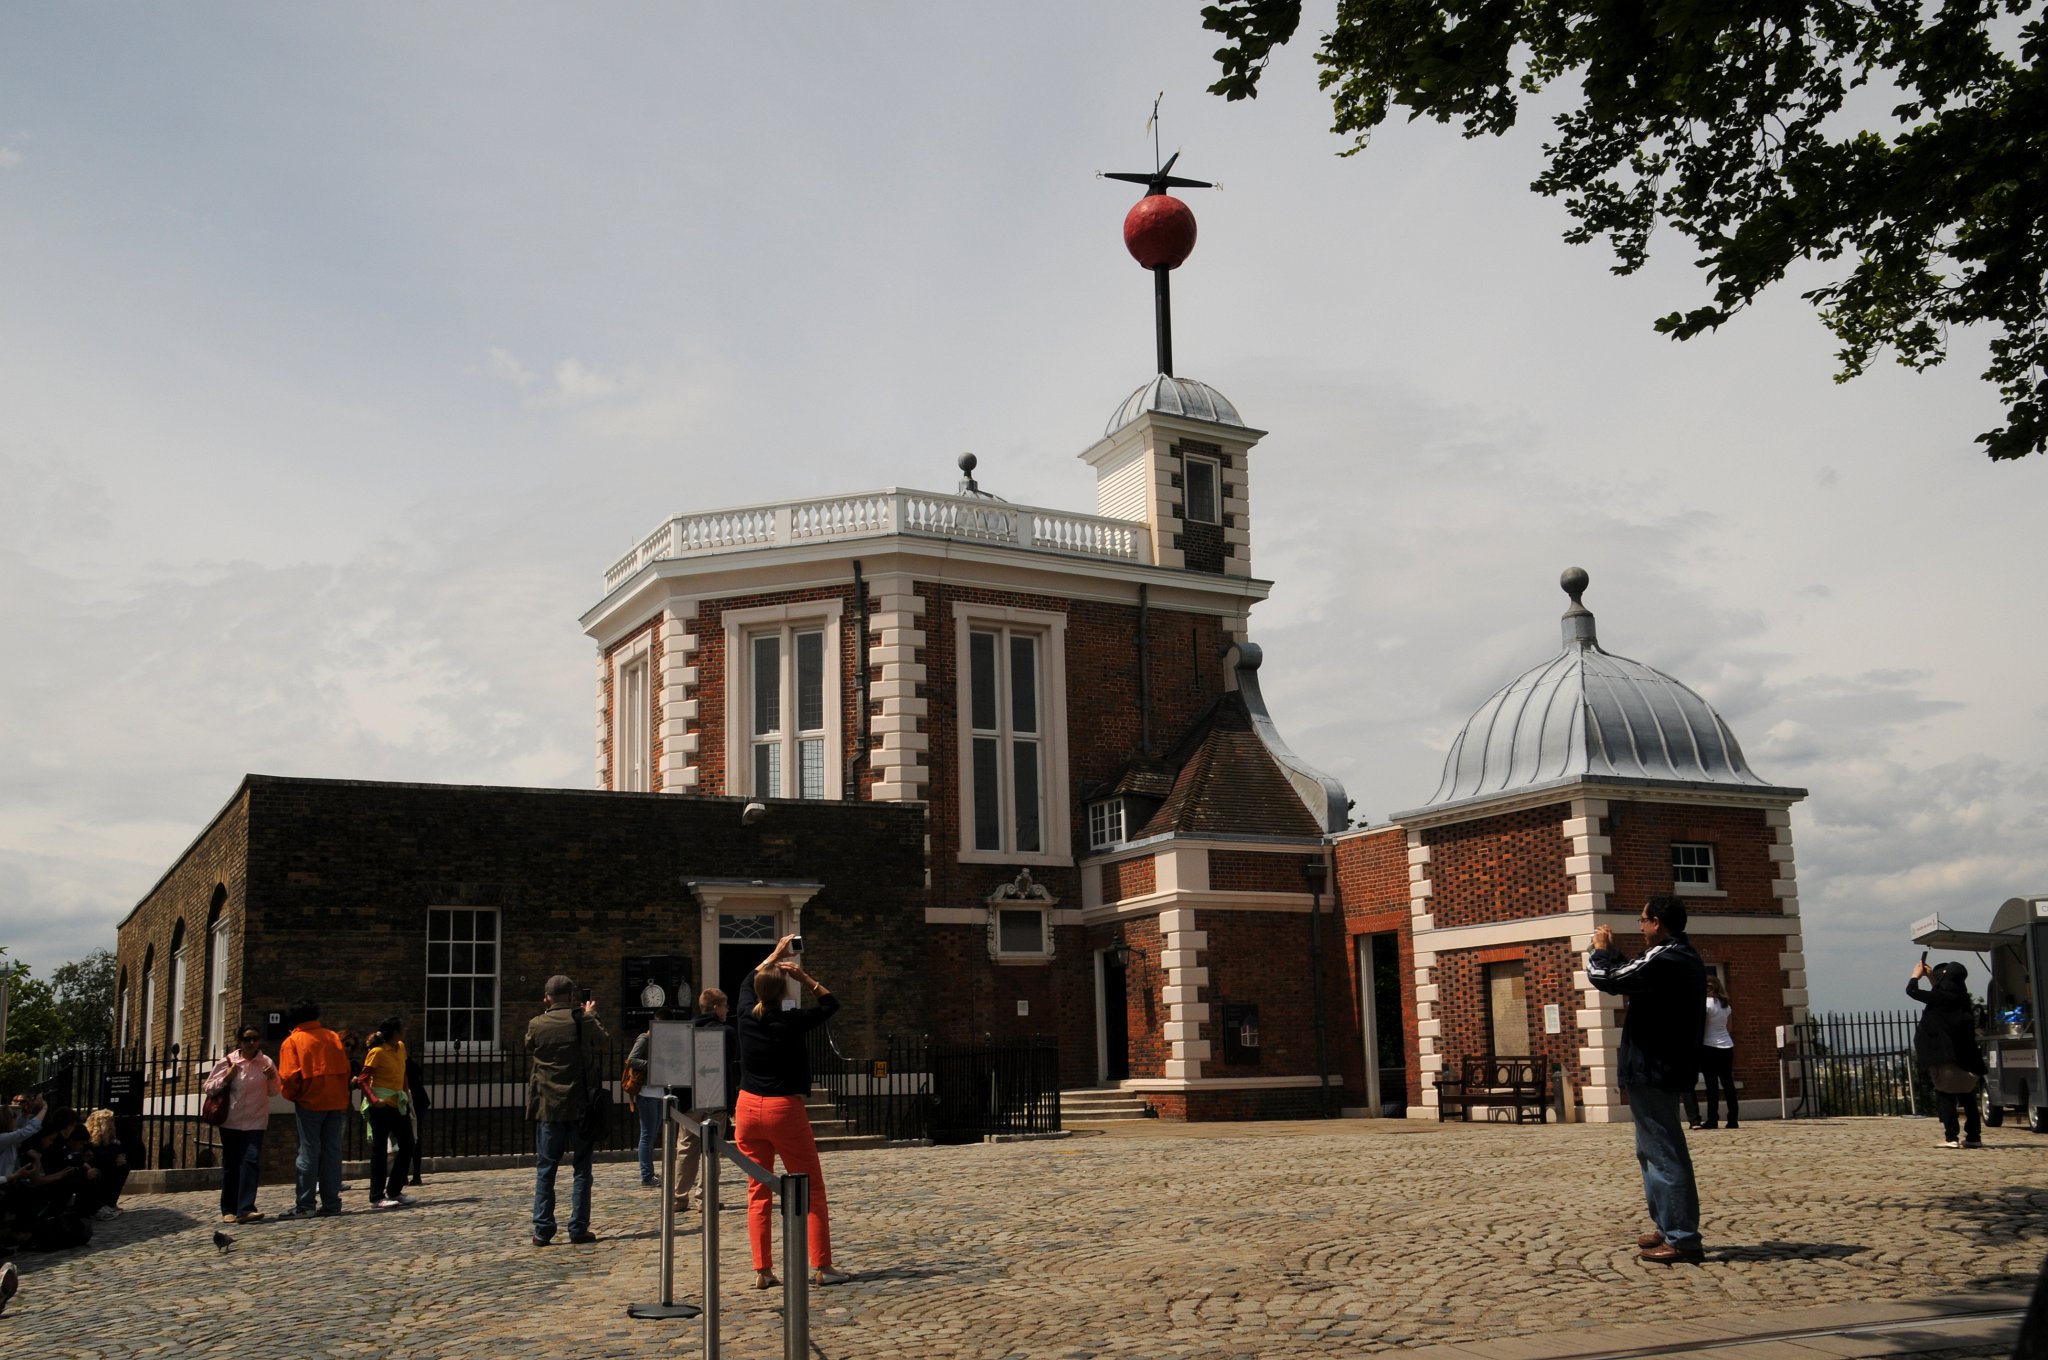 DSC_4115_2.jpg - Královská greenwichská observatoř (anglicky původně Royal Greenwich Observatory) byla zřízena roku 1675 králem Karlem II. V té době byl také zřízen úřad královského astronoma, aby řídil práci observatoře a podporu navigace. Nachází se na kopci v Greenwich Parku v londýnském obvodu Greenwich. Britští astronomové používali observatoř pro svá měření dlouhou dobu. Budovou vedly čtyři poledníky. Základem pro měření zeměpisné polohy byl nultý poledník ustanovený roku 1851 a přijatý na mezinárodní konferenci roku 1884. Původně byla jeho poloha vyznačena na dvoře observatoře mosazným páskem, později nahrazen páskem z nerezové oceli a od 16. prosince 1999 silným zeleným laserovým paprskem osvětlujícím londýnské noční nebe.